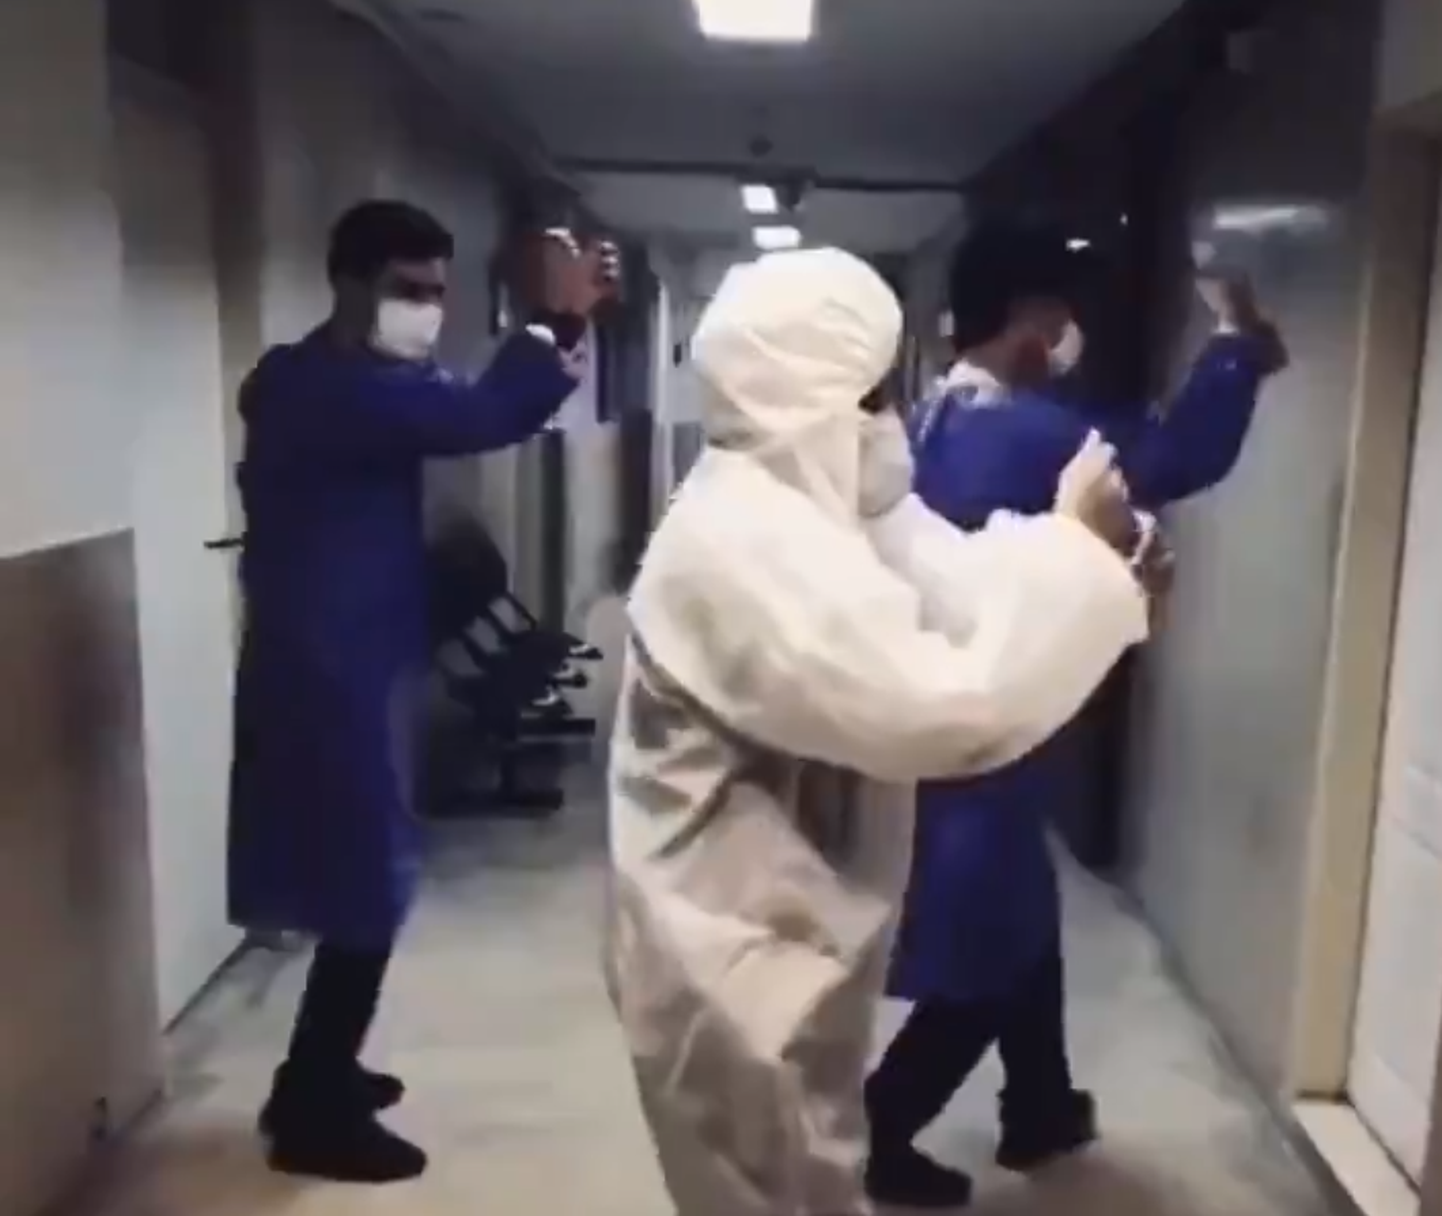 Iraani tervishoiutöötajad loovad tantsides lõbusat meeleolu.